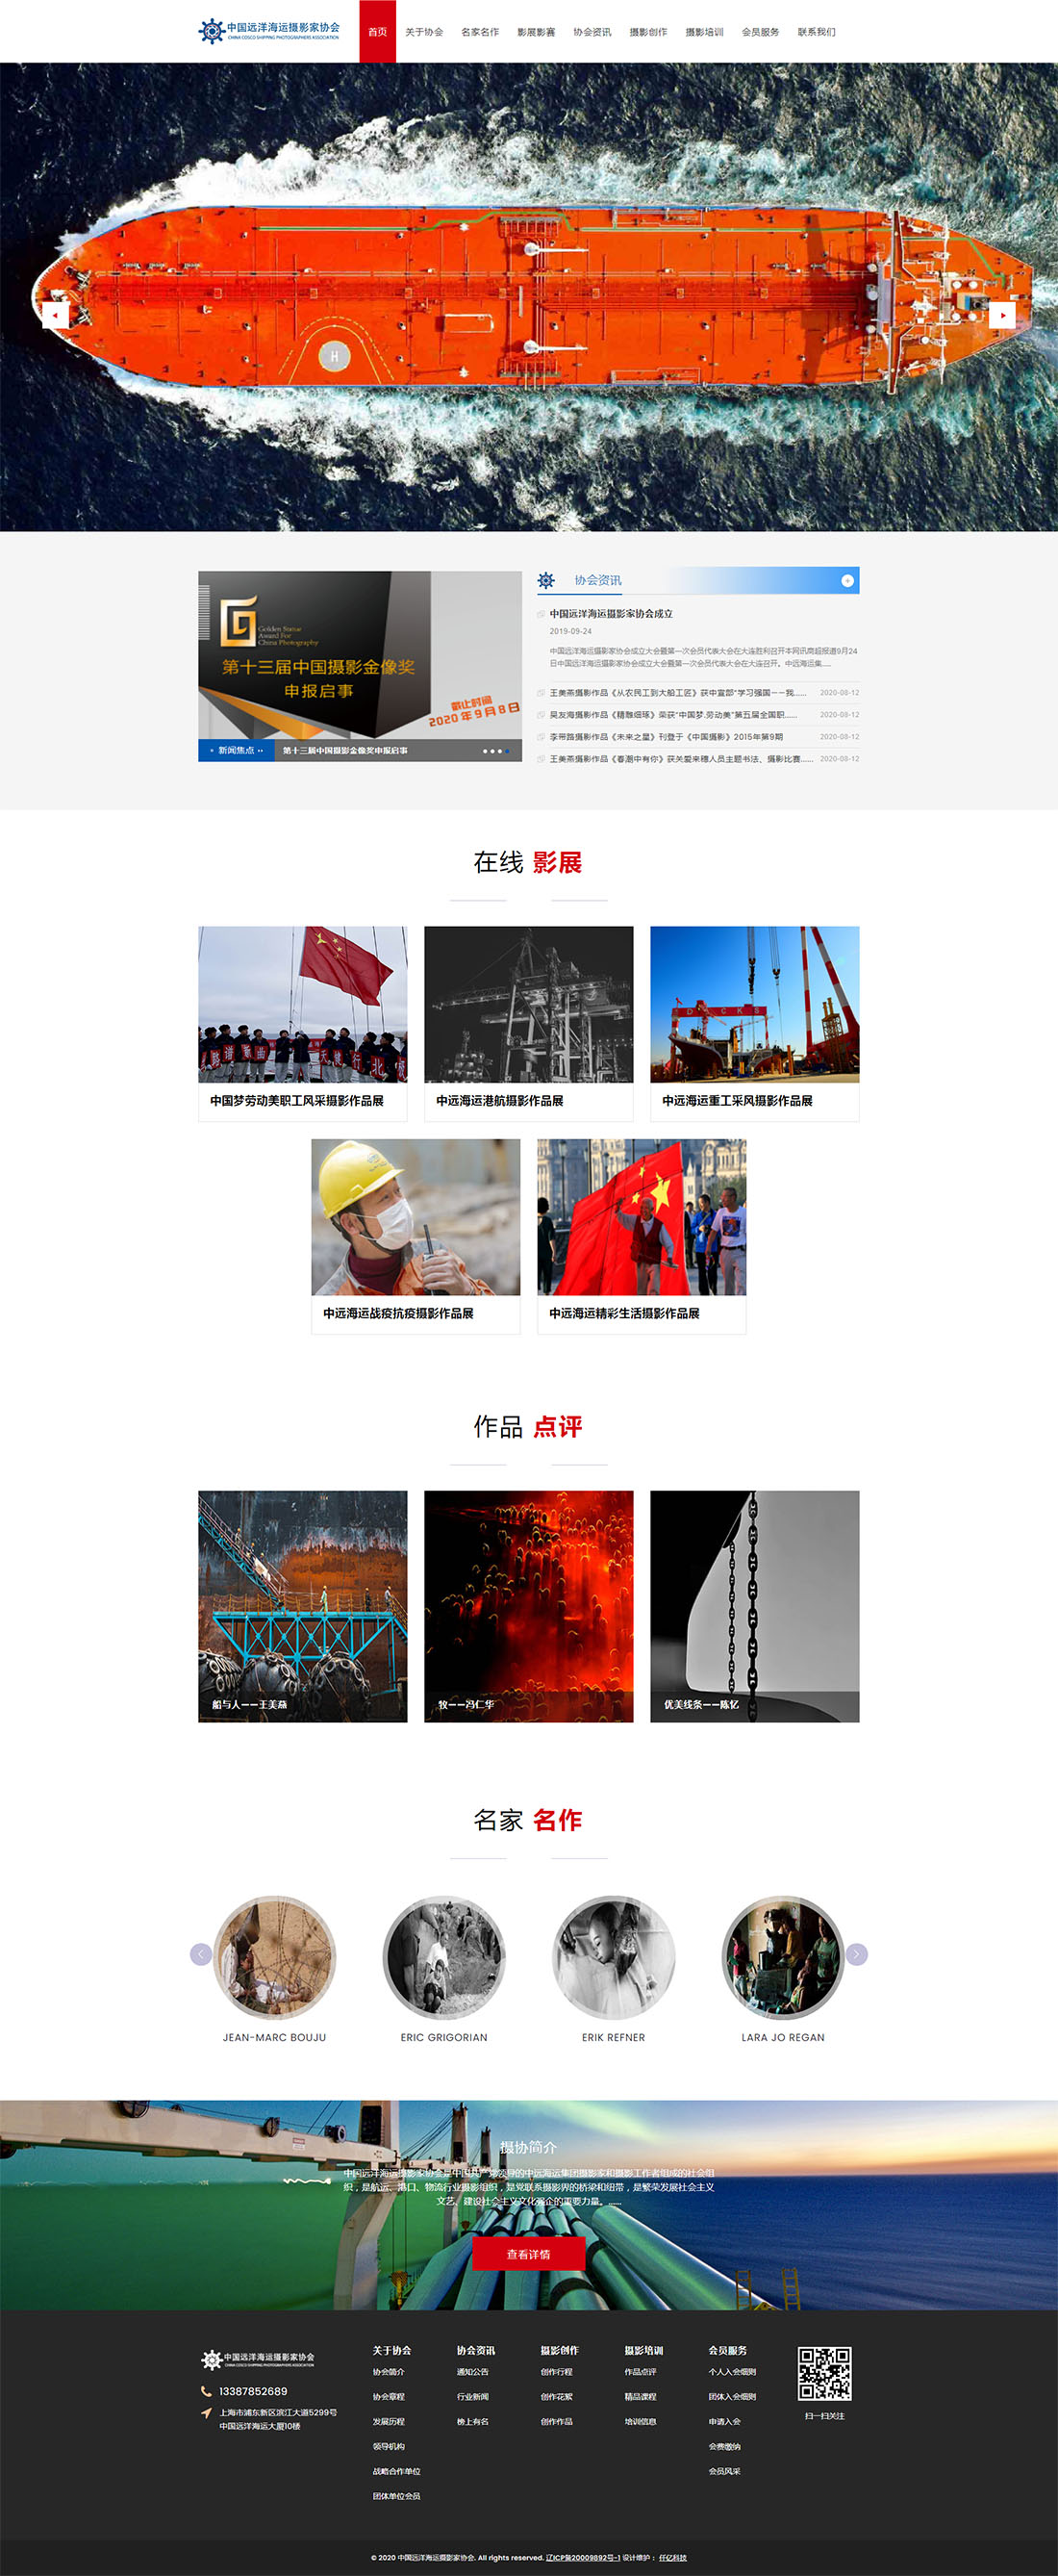 中国远洋海运摄影家协会网站首页效果图